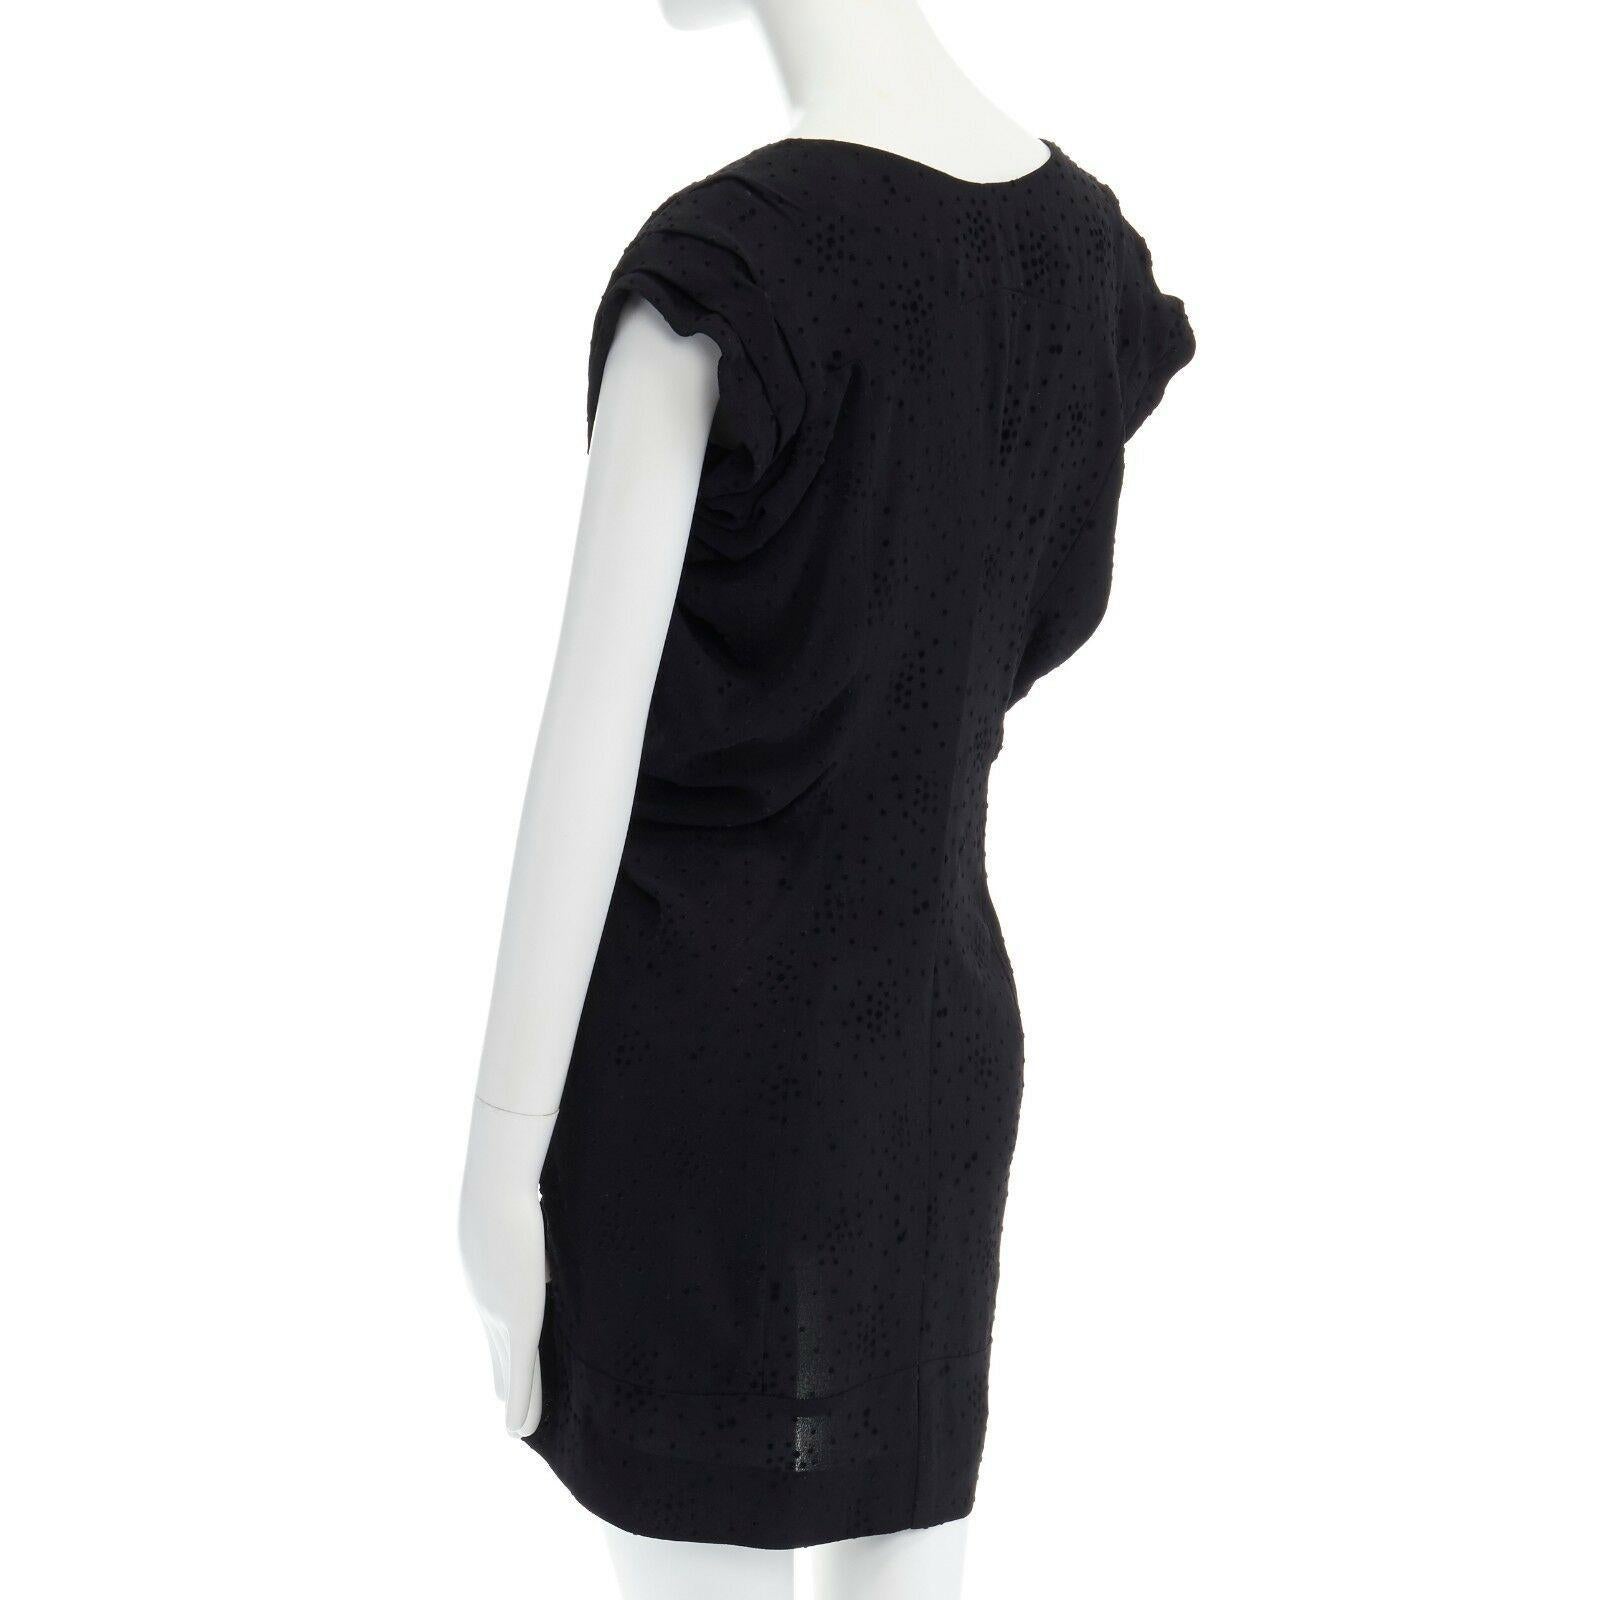 BALENCIAGA Black Dress velvet dot rusched waist mini dress S FR36 US4 2